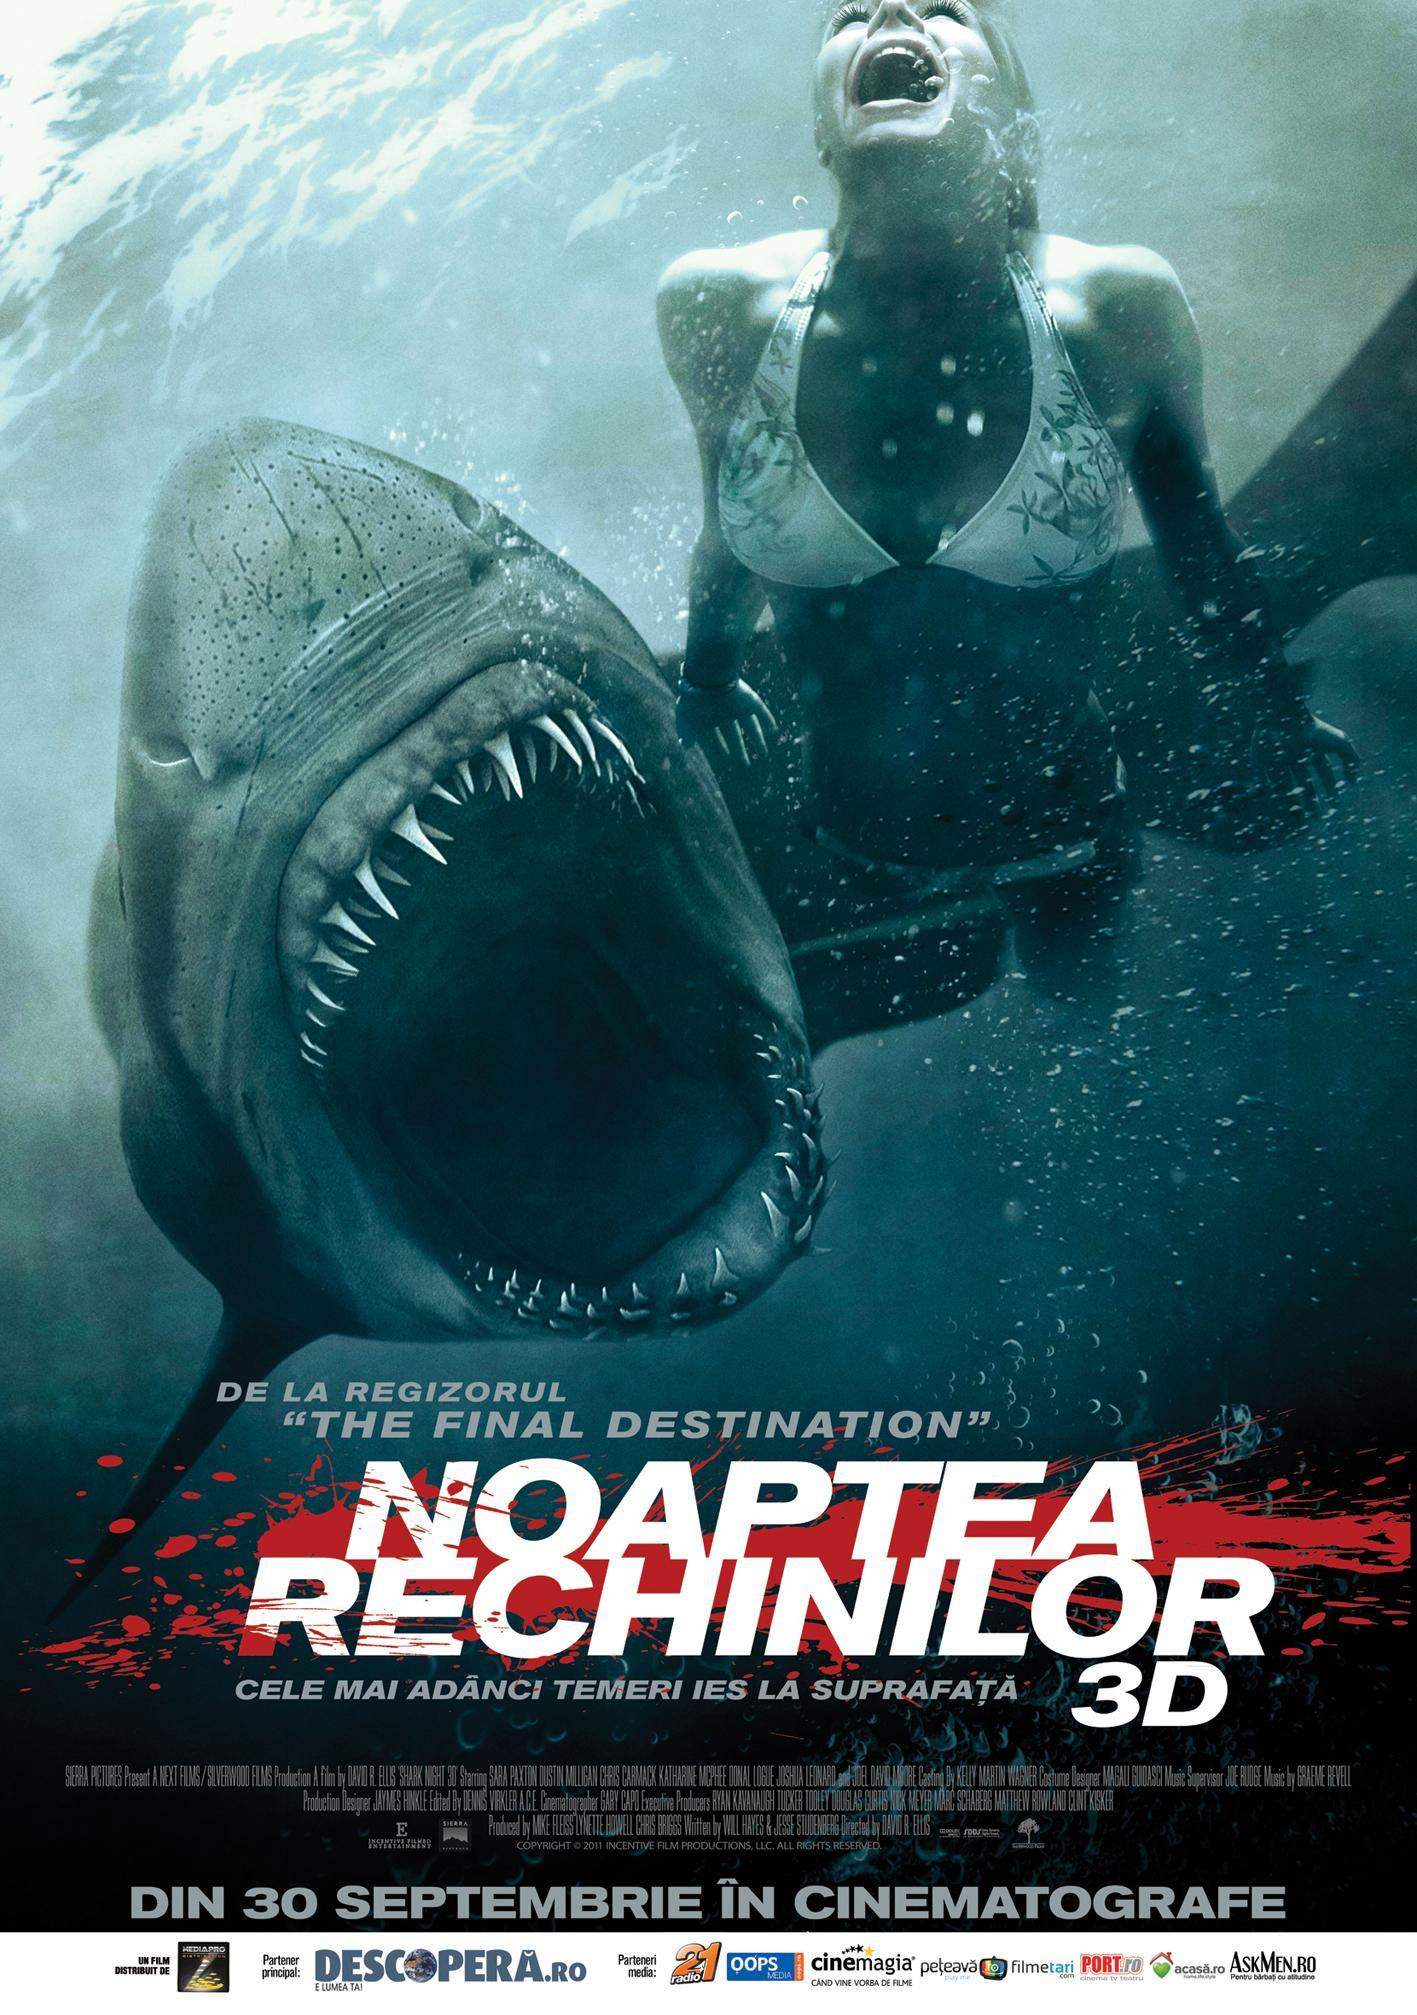 Постер фильма Челюсти 3D | Shark Night 3D